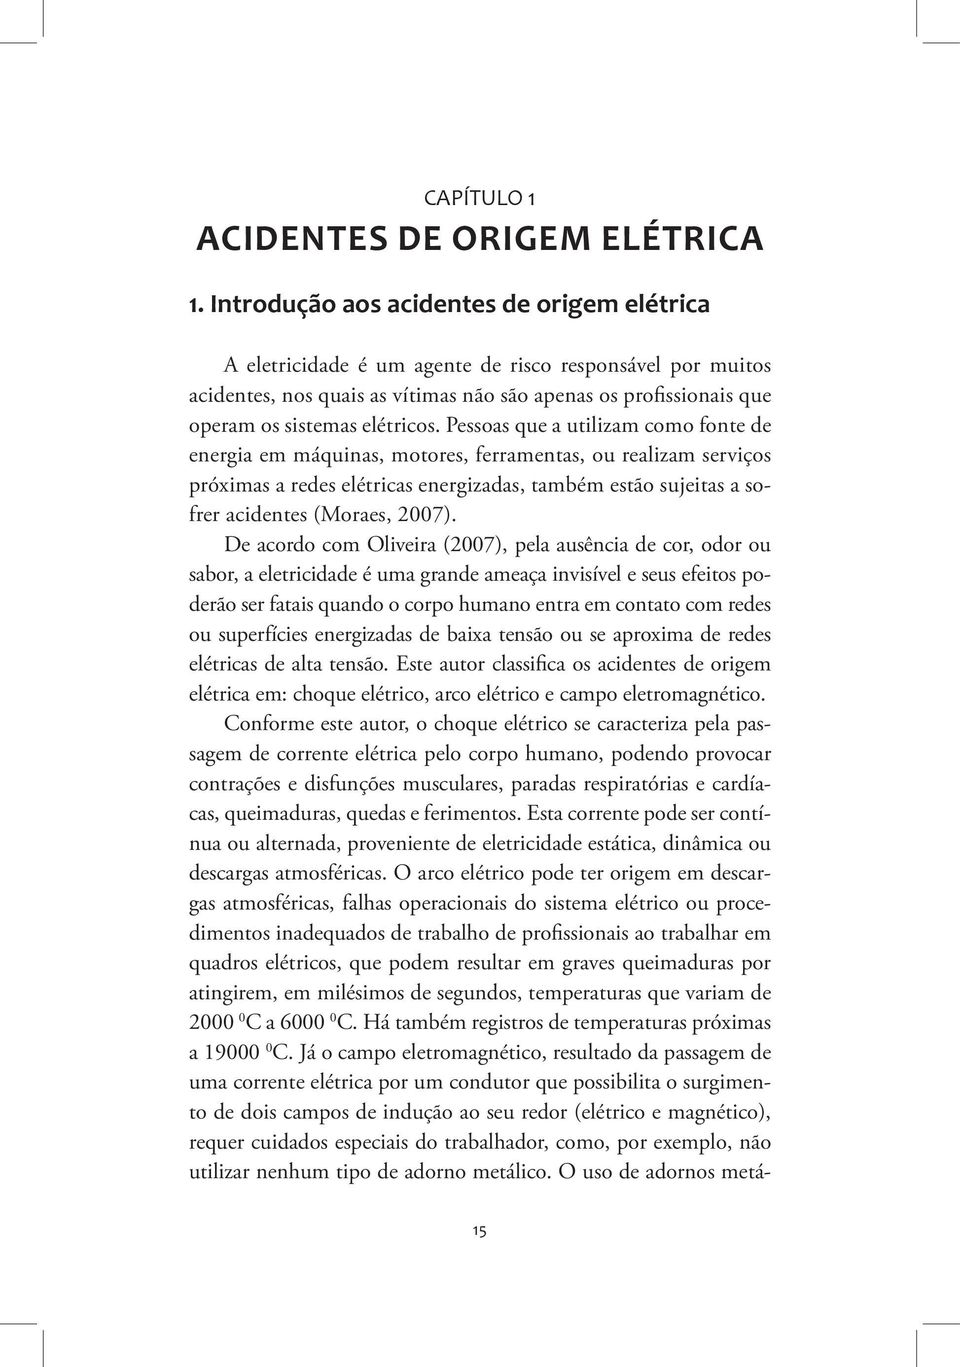 Pessoas que a utilizam como fonte de energia em máquinas, motores, ferramentas, ou realizam serviços próximas a redes elétricas energizadas, também estão sujeitas a sofrer acidentes (Moraes, 2007).